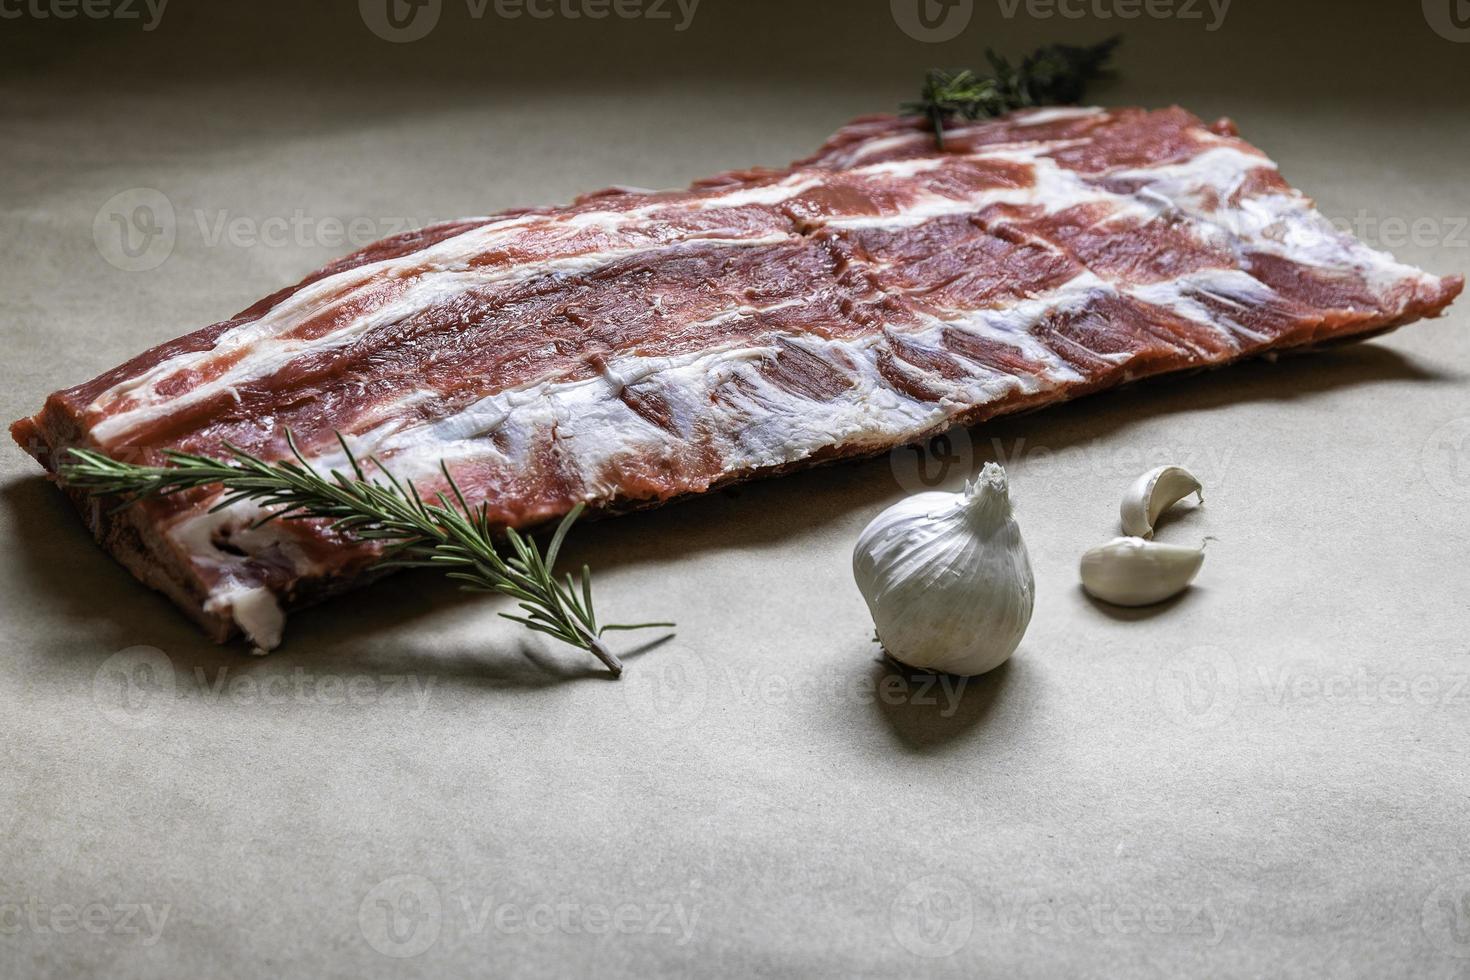 biefstuk vlees. rundvlees. rundvlees van hoge kwaliteit wordt uit de achterhand van het dier gehaald, meestal in dikke plakken gesneden die worden gekookt door te koken of te braden. foto